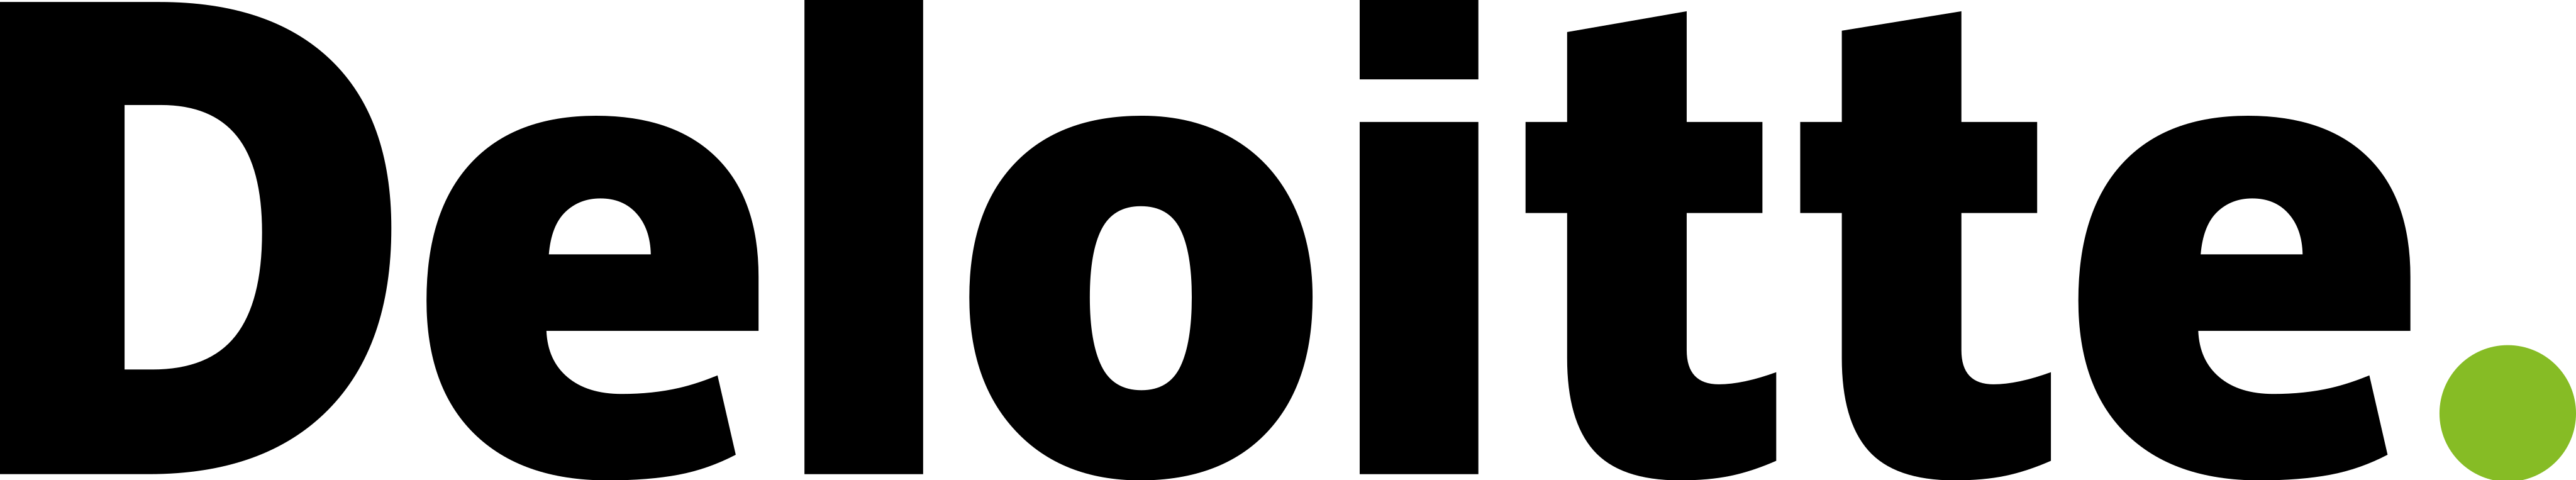 Deloitte Logo PNG Picture